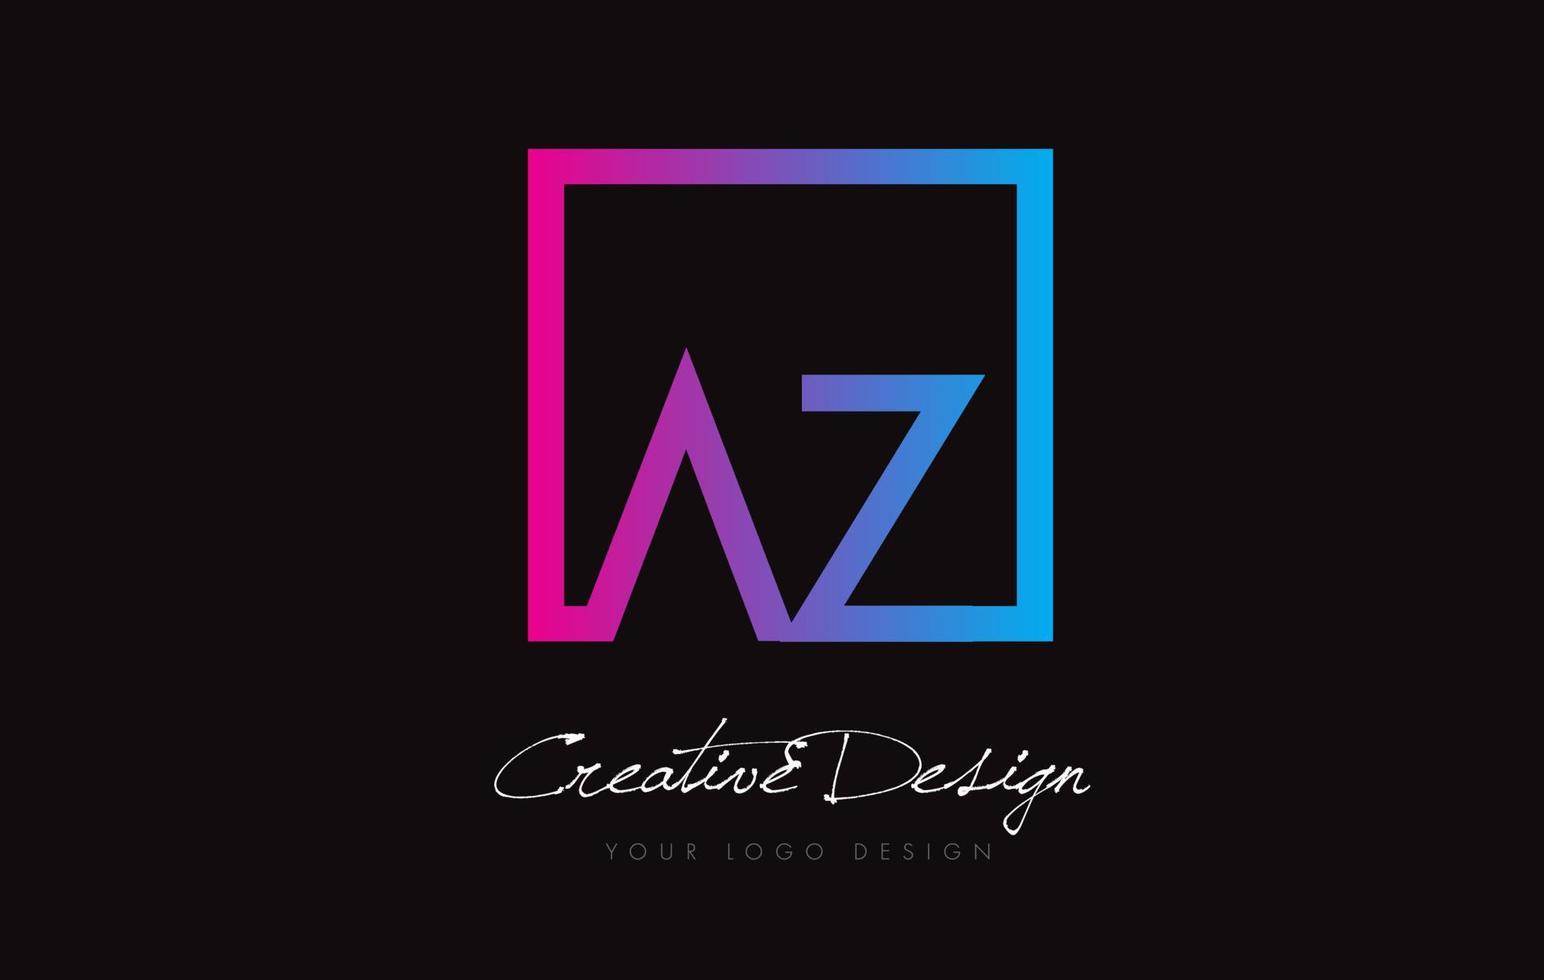 AZ Square Frame Letter Logo Design with Purple Blue Colors. vector